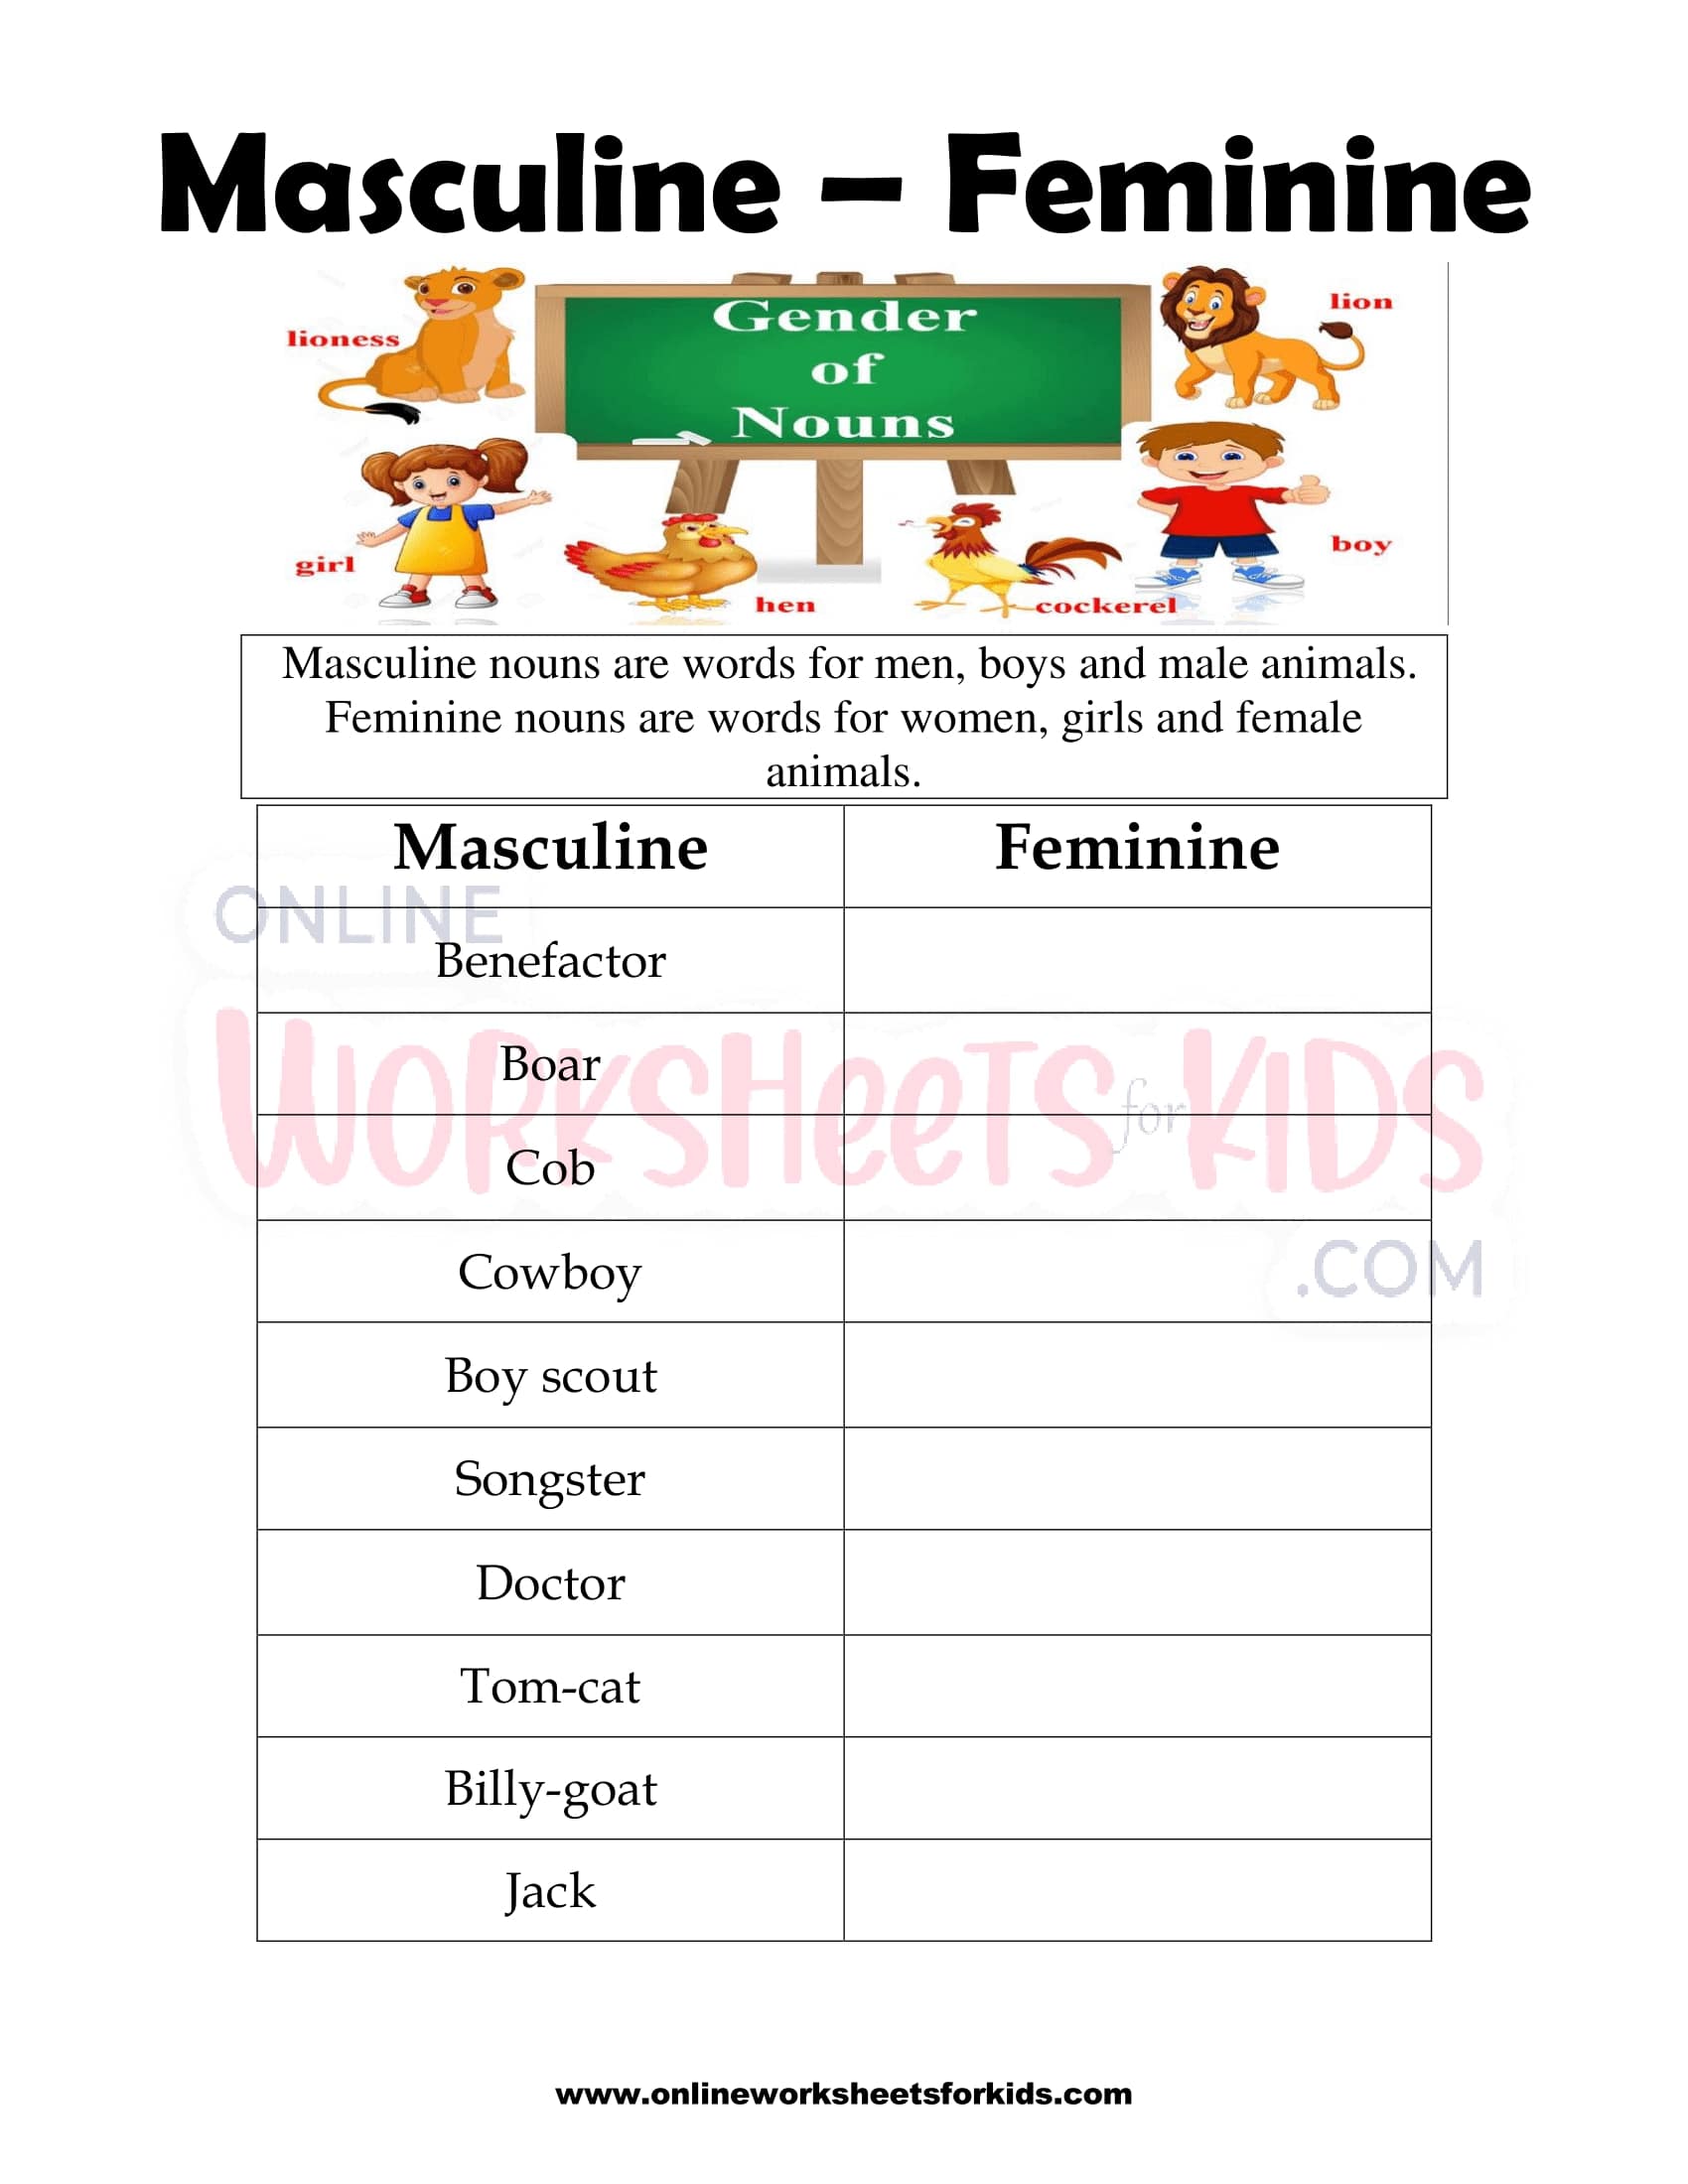 Free Masculine and Feminine Gender Worksheets for Kids